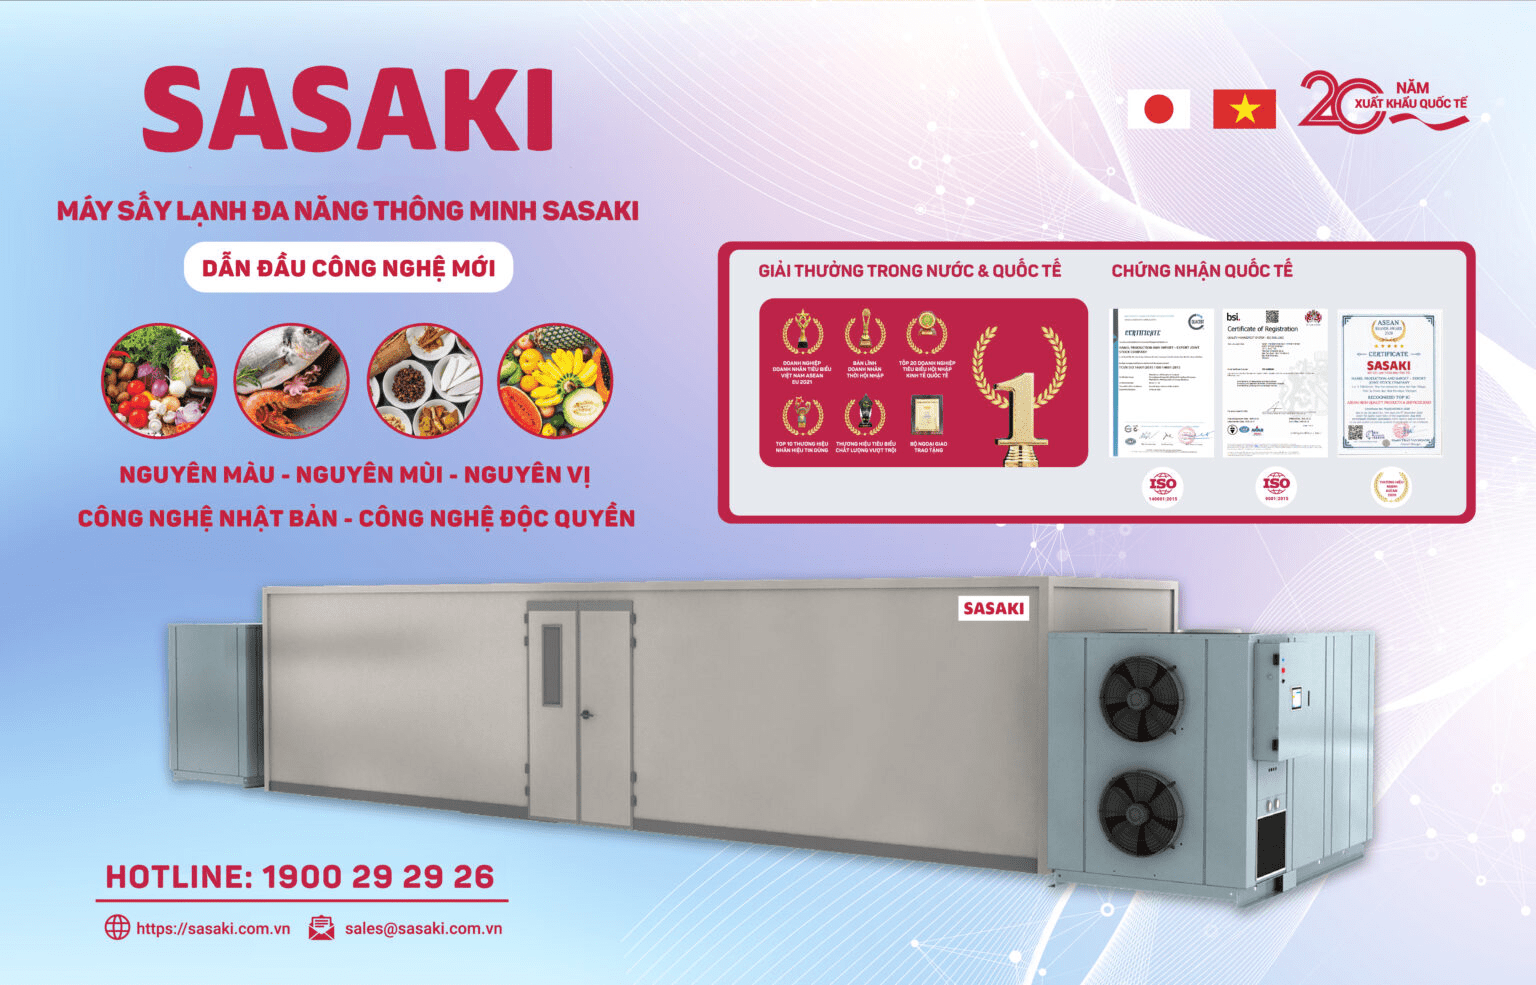 Các sản phẩm máy sấy yến SASAKI đều đạt chứng nhận quốc tế về chất lượng sản phẩm, môi trường và đảm bảo an toàn khi sử dụng